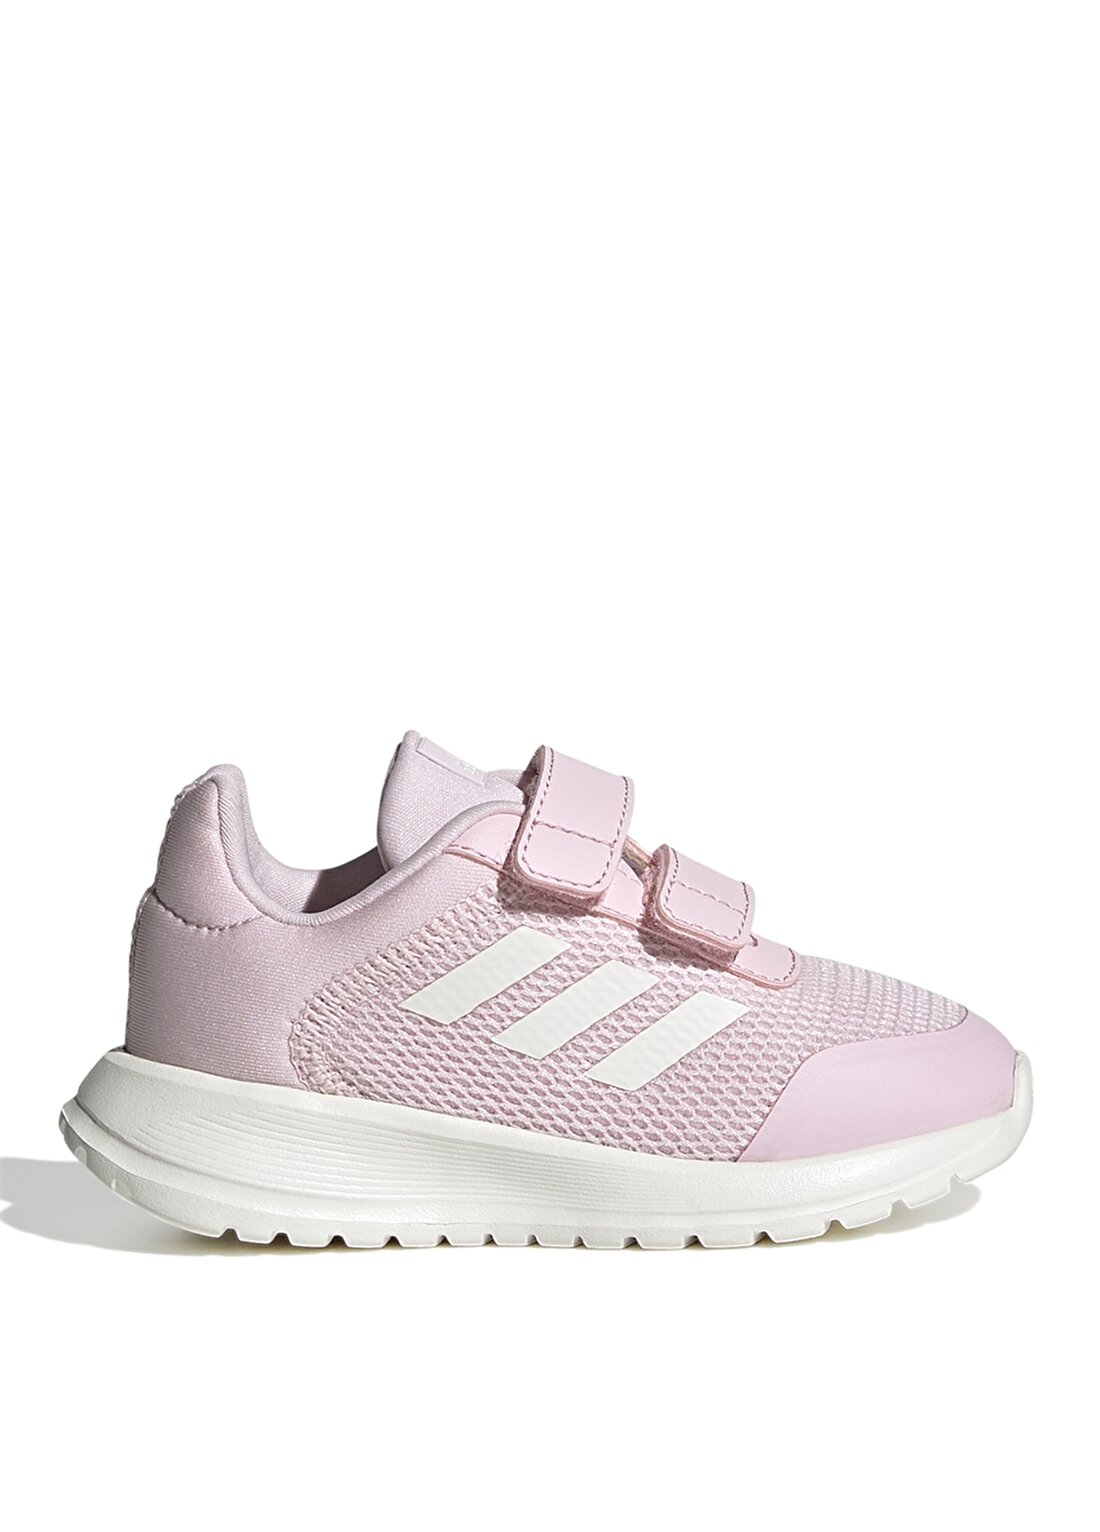 Adidas Pembe Kız Bebek Yürüyüş Ayakkabısı GZ5854 Tensaur Run 2.0 CF I